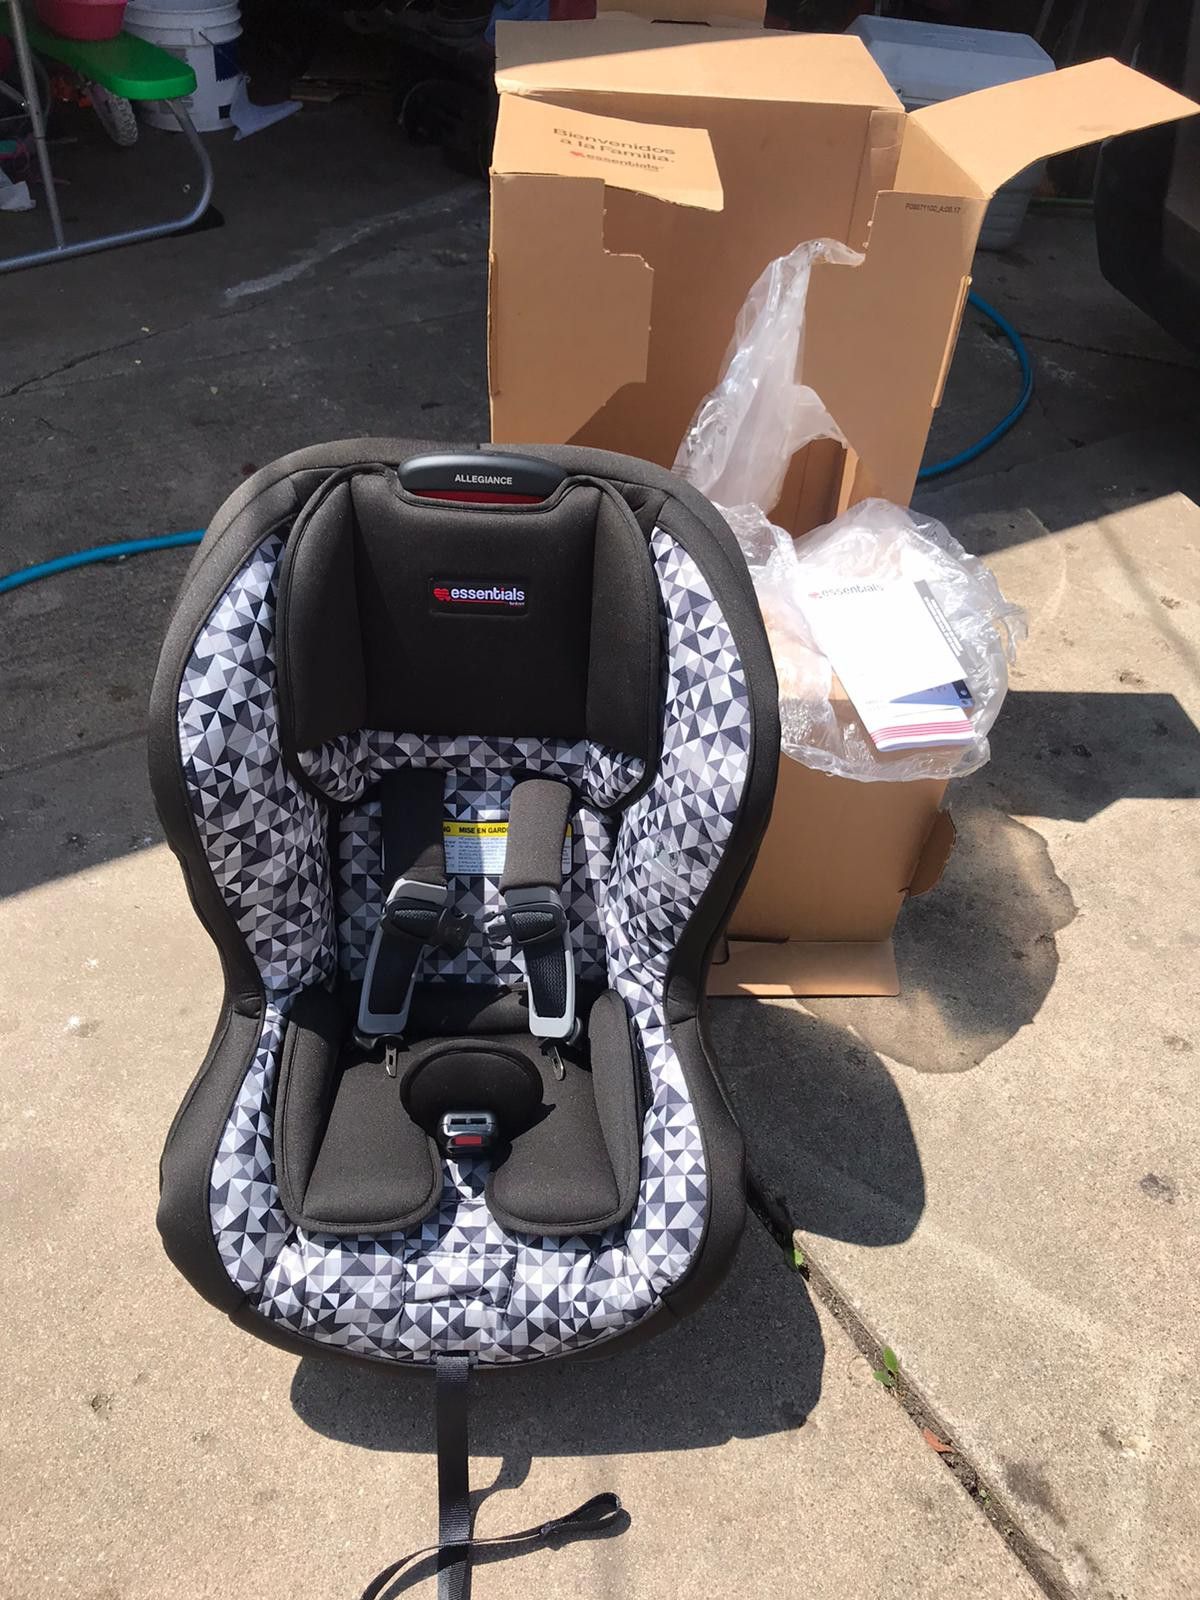 Essentials allegiance baby car seat